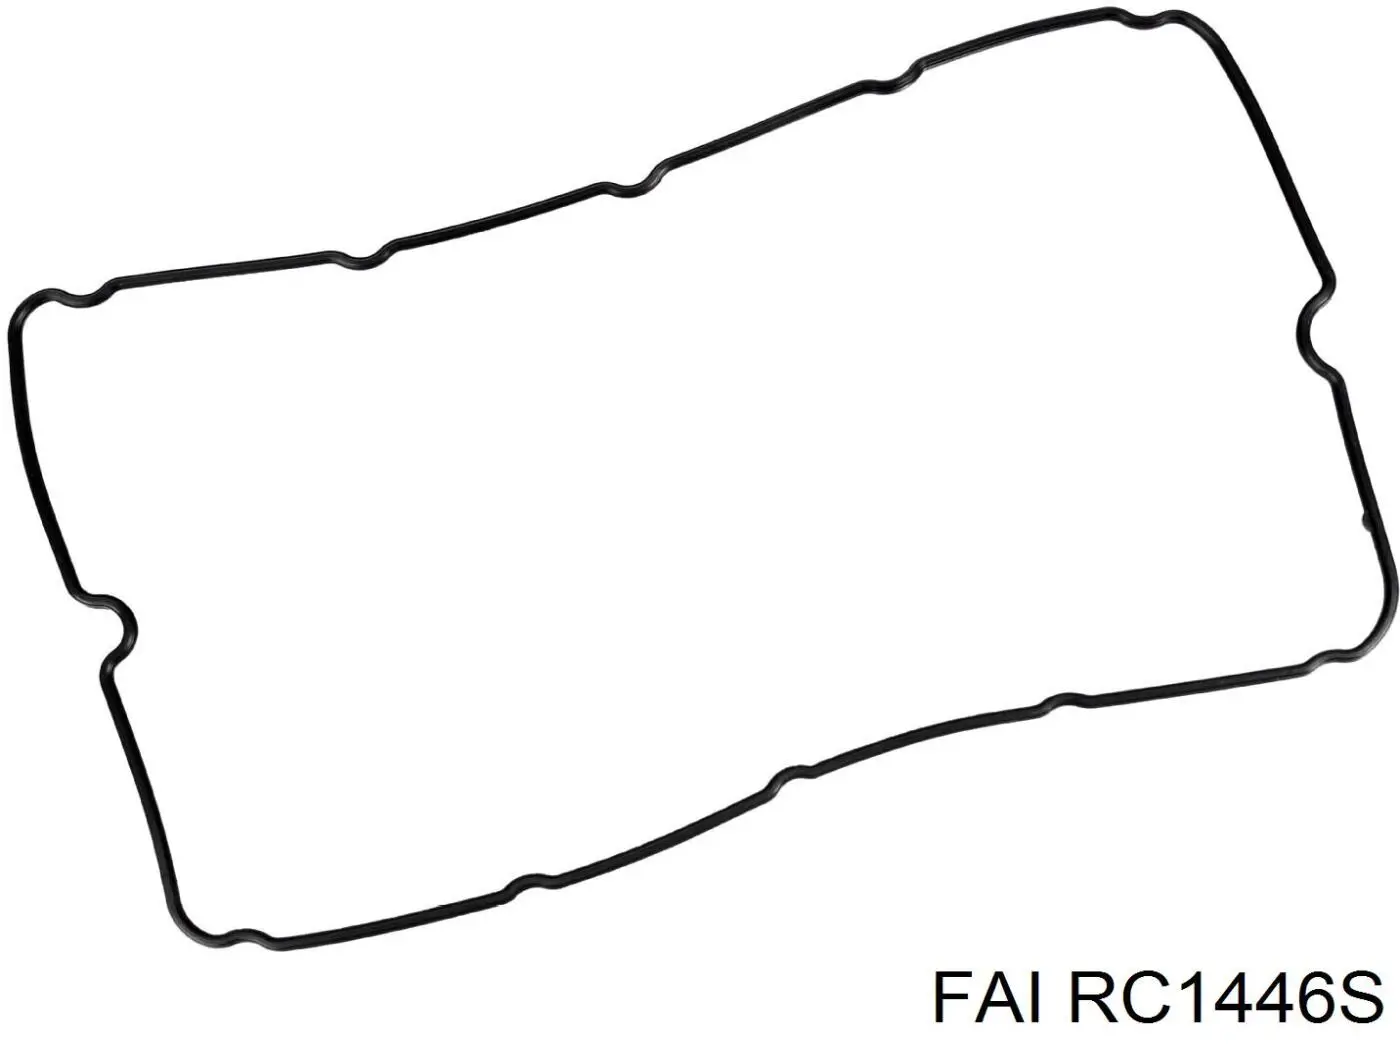 RC1446S FAI junta tapa de balancines